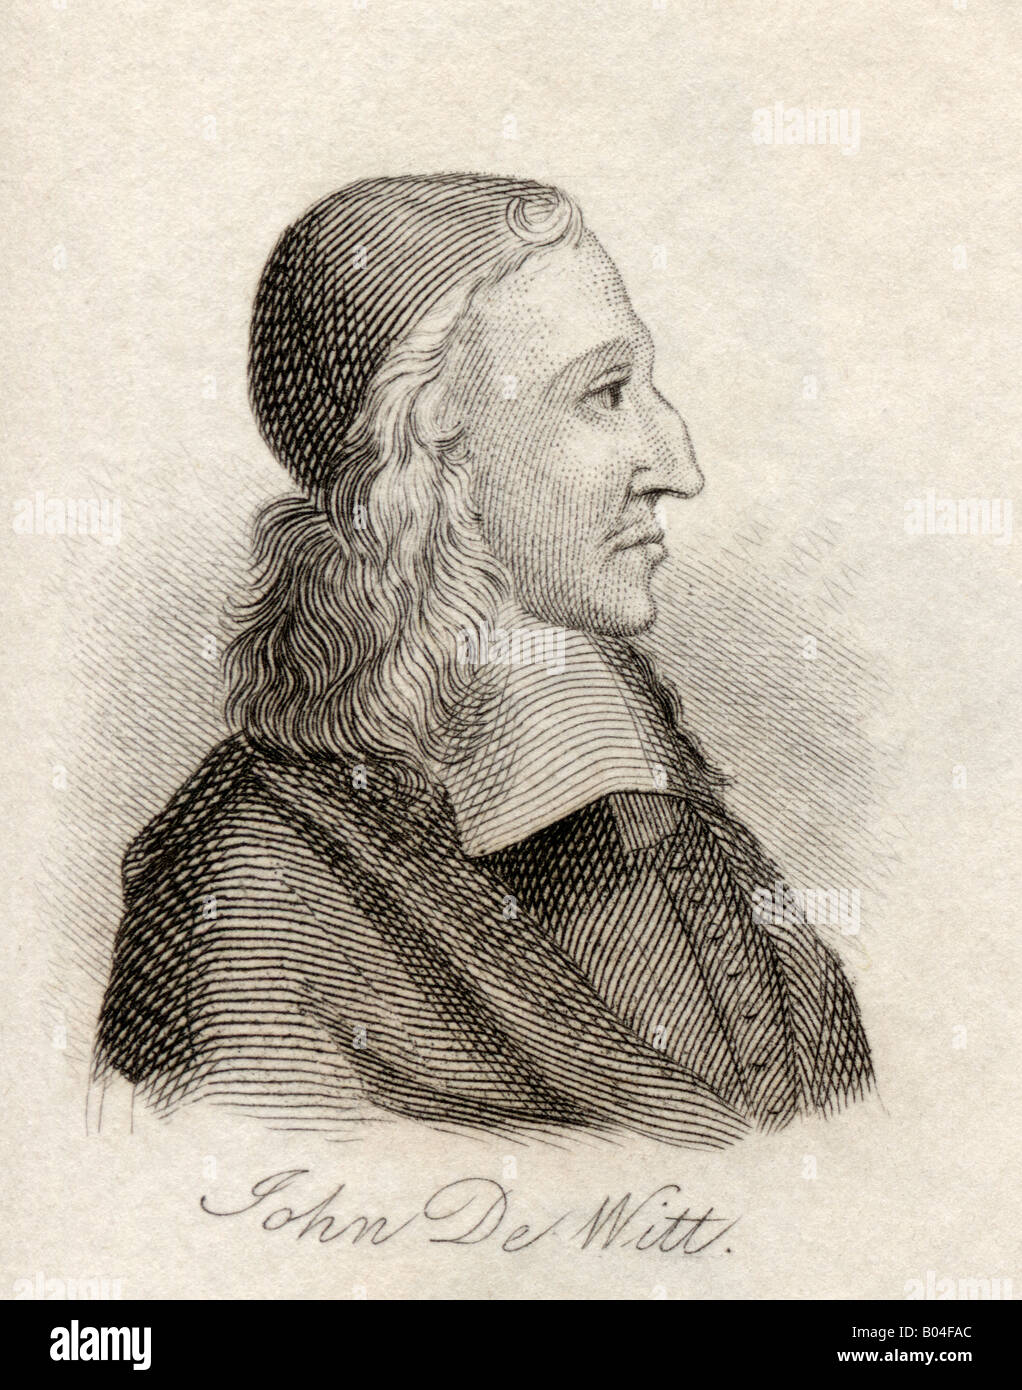 Johan de Witt, 1625 - 1672. Homme d'État hollandais, dirigeant politique néerlandais. Tiré du livre Crabbs Historical Dictionary, publié en 1825. Banque D'Images